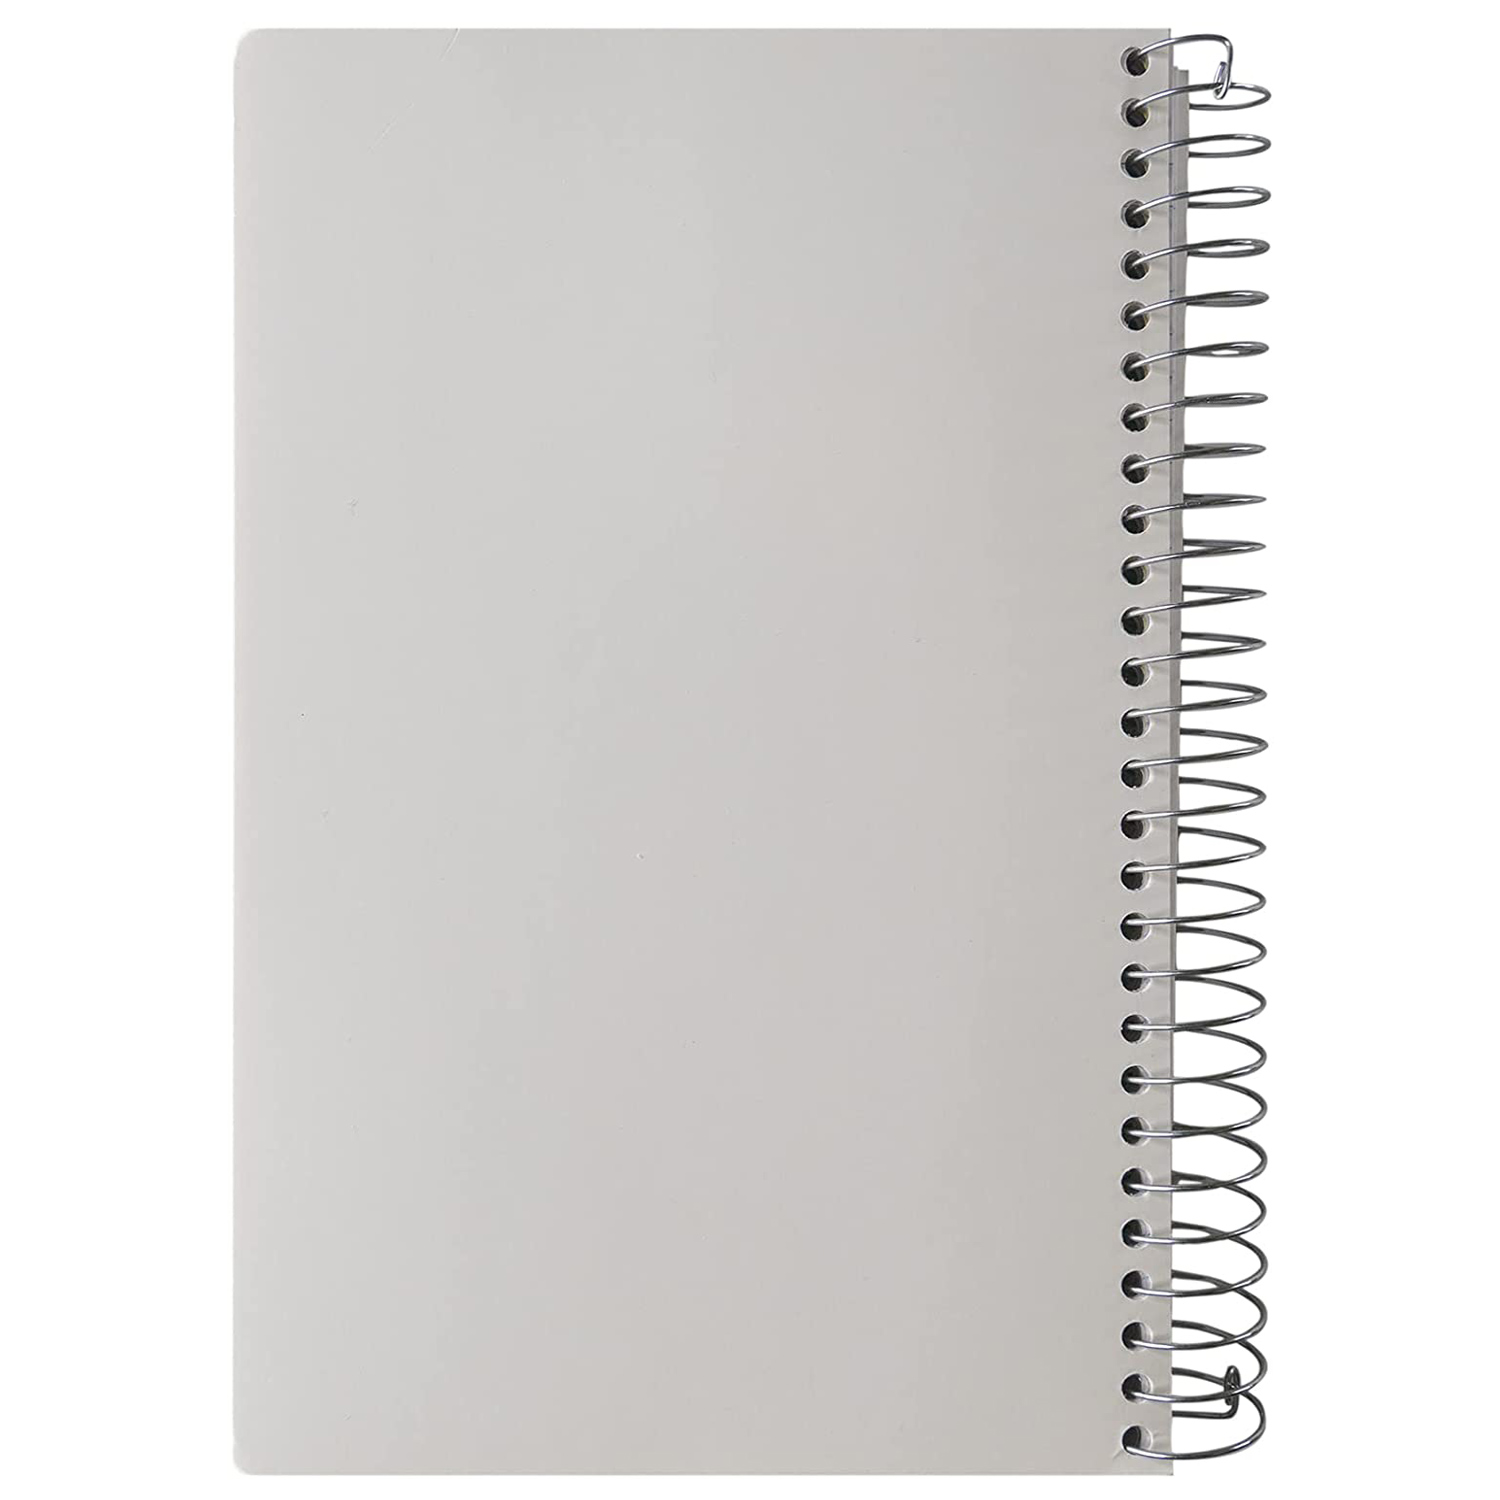 Hilroy - Cahier de notes spirale 1 sujet, 200 pages. Colour: grey. Size:  200 pages, Fr